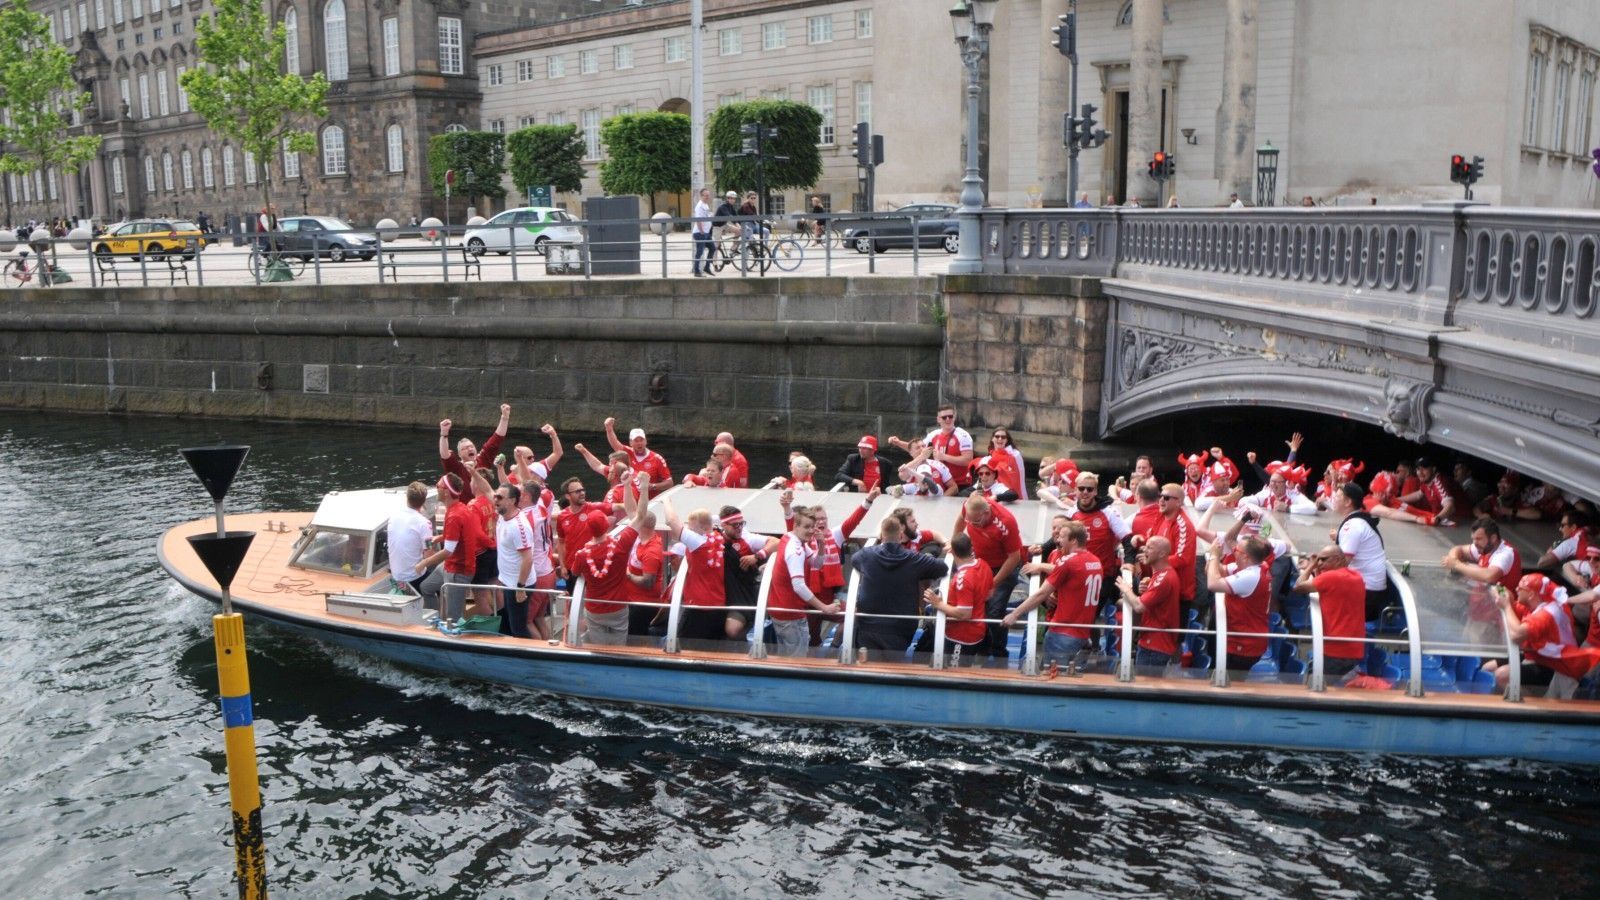 
                <strong>Dänische Fans bringen sich in Stimmung</strong><br>
                Die dänischen Fans bringen sich schon einmal auf Booten in die richtige Stimmung.
              